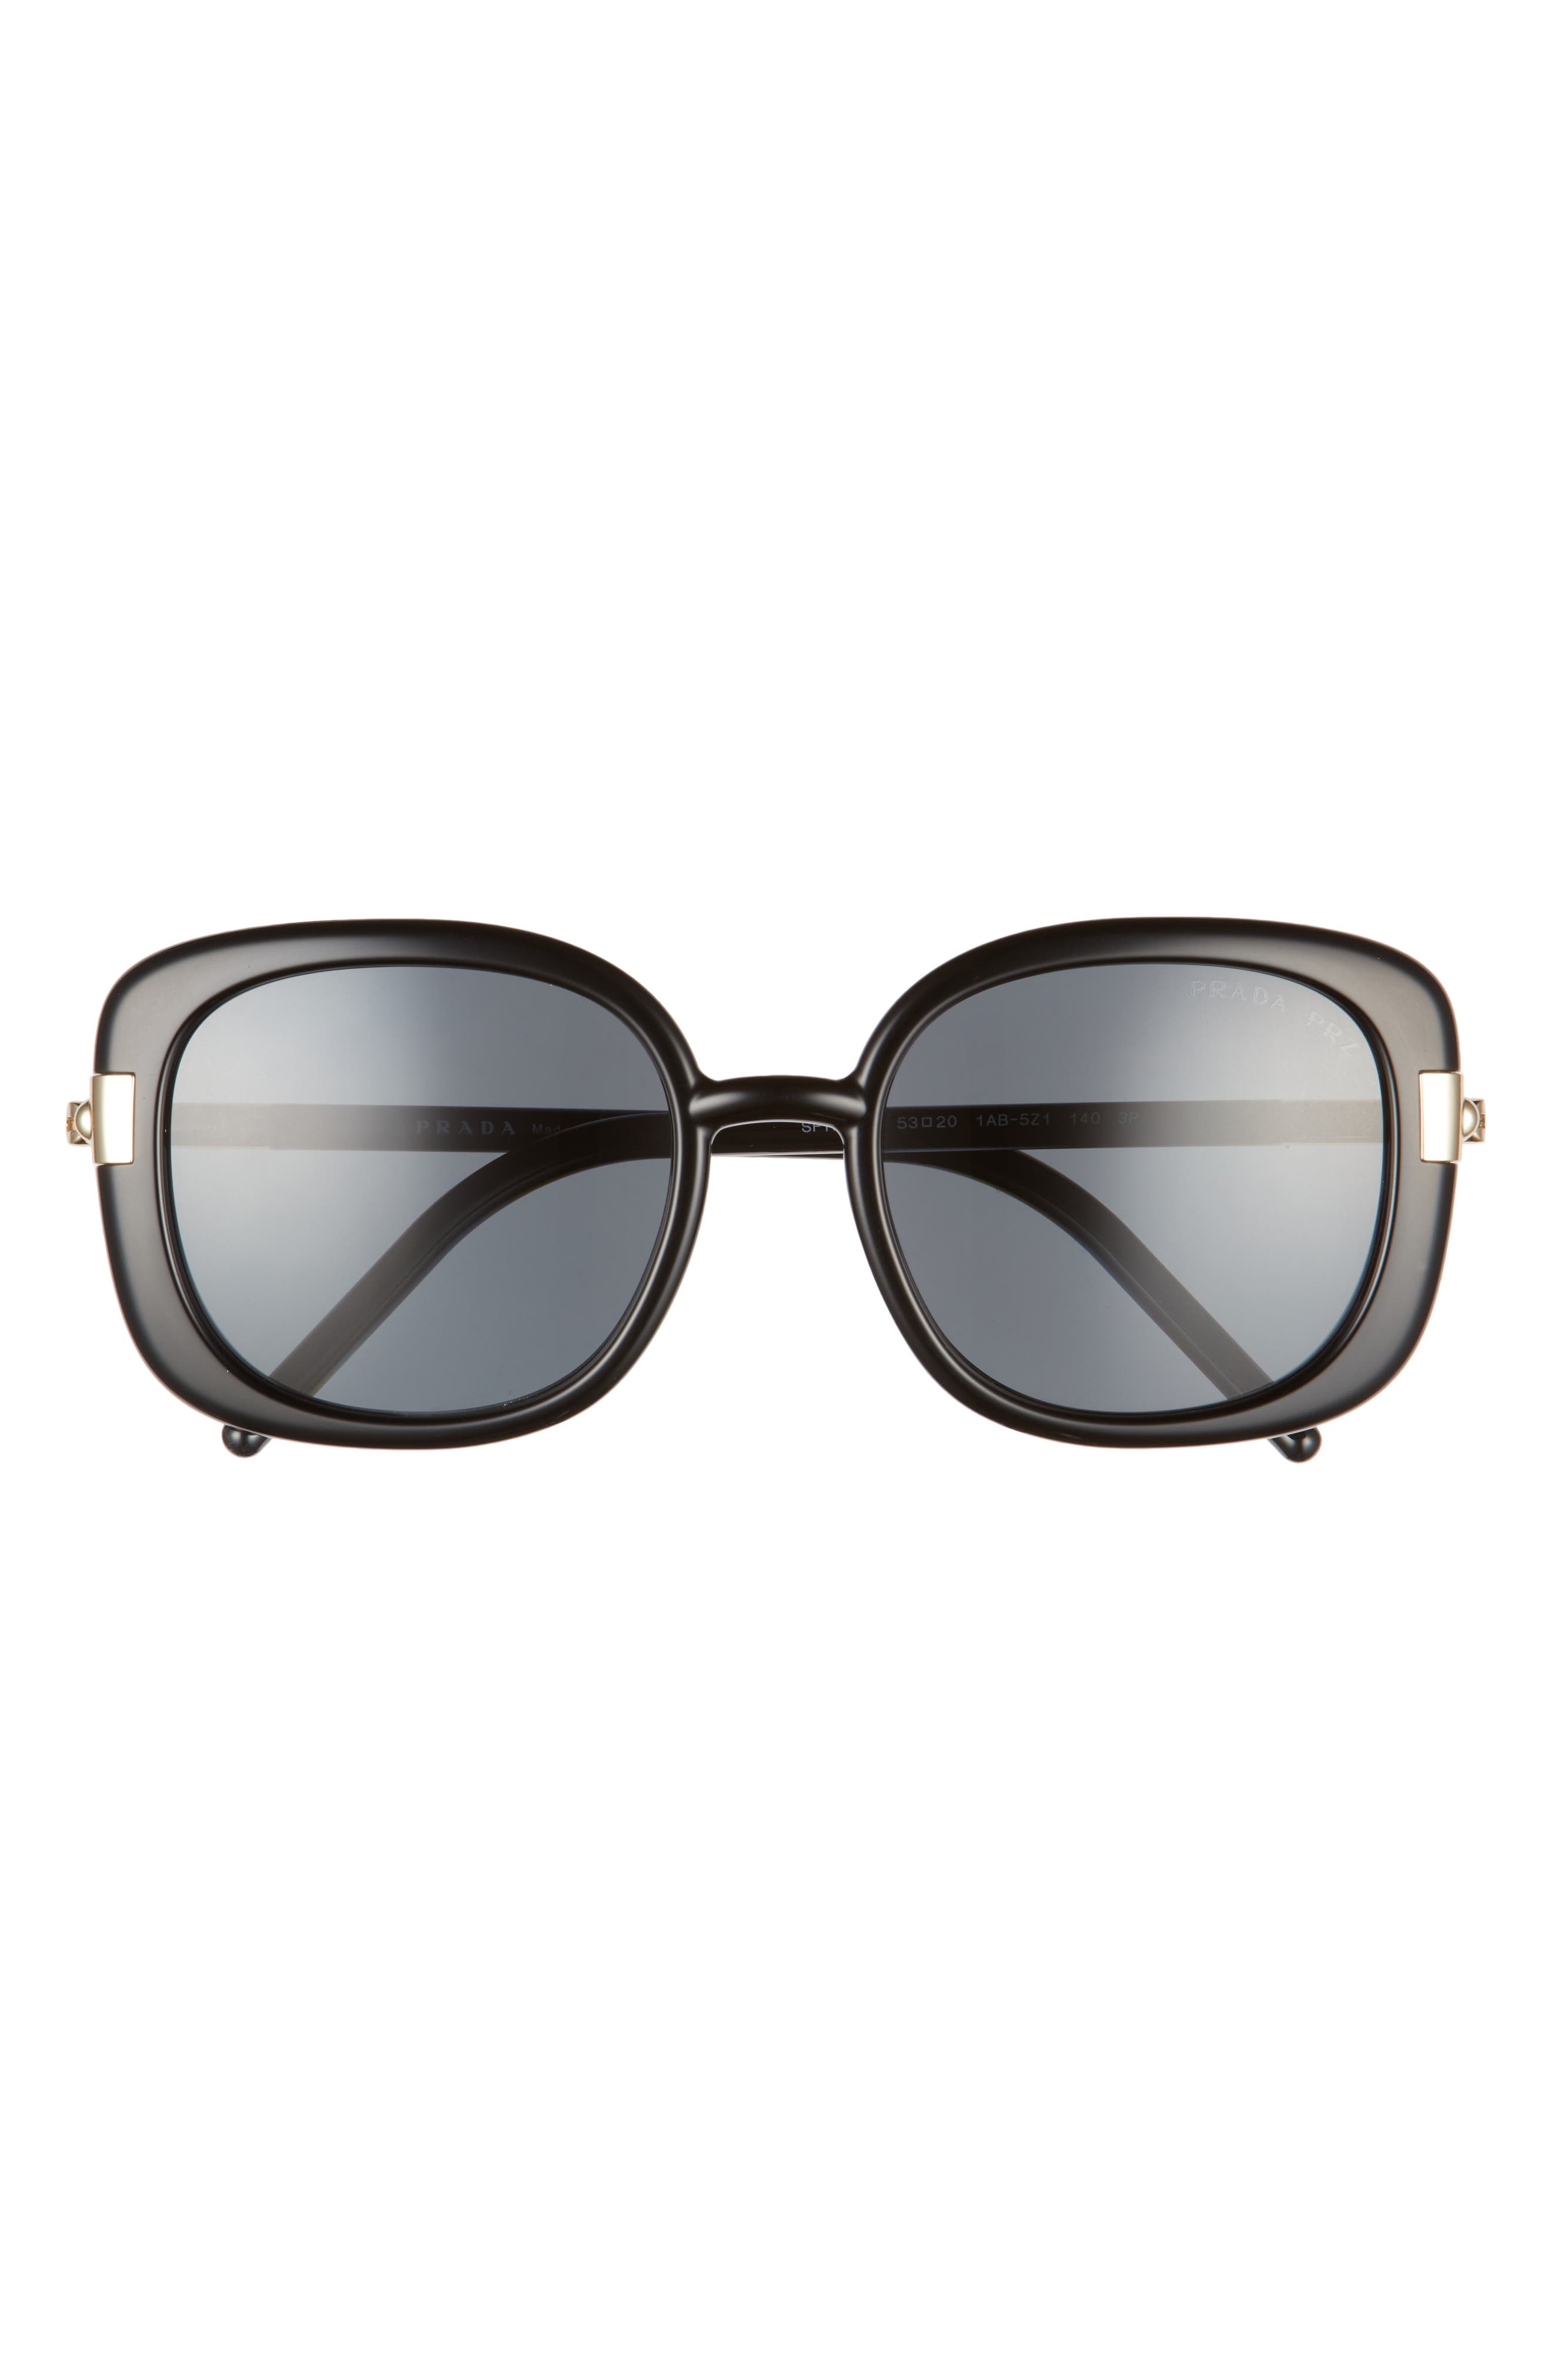 Prada Pillow 53mm Polarized Sunglasses in Black/Polarized Dark Grey at Nordstrom